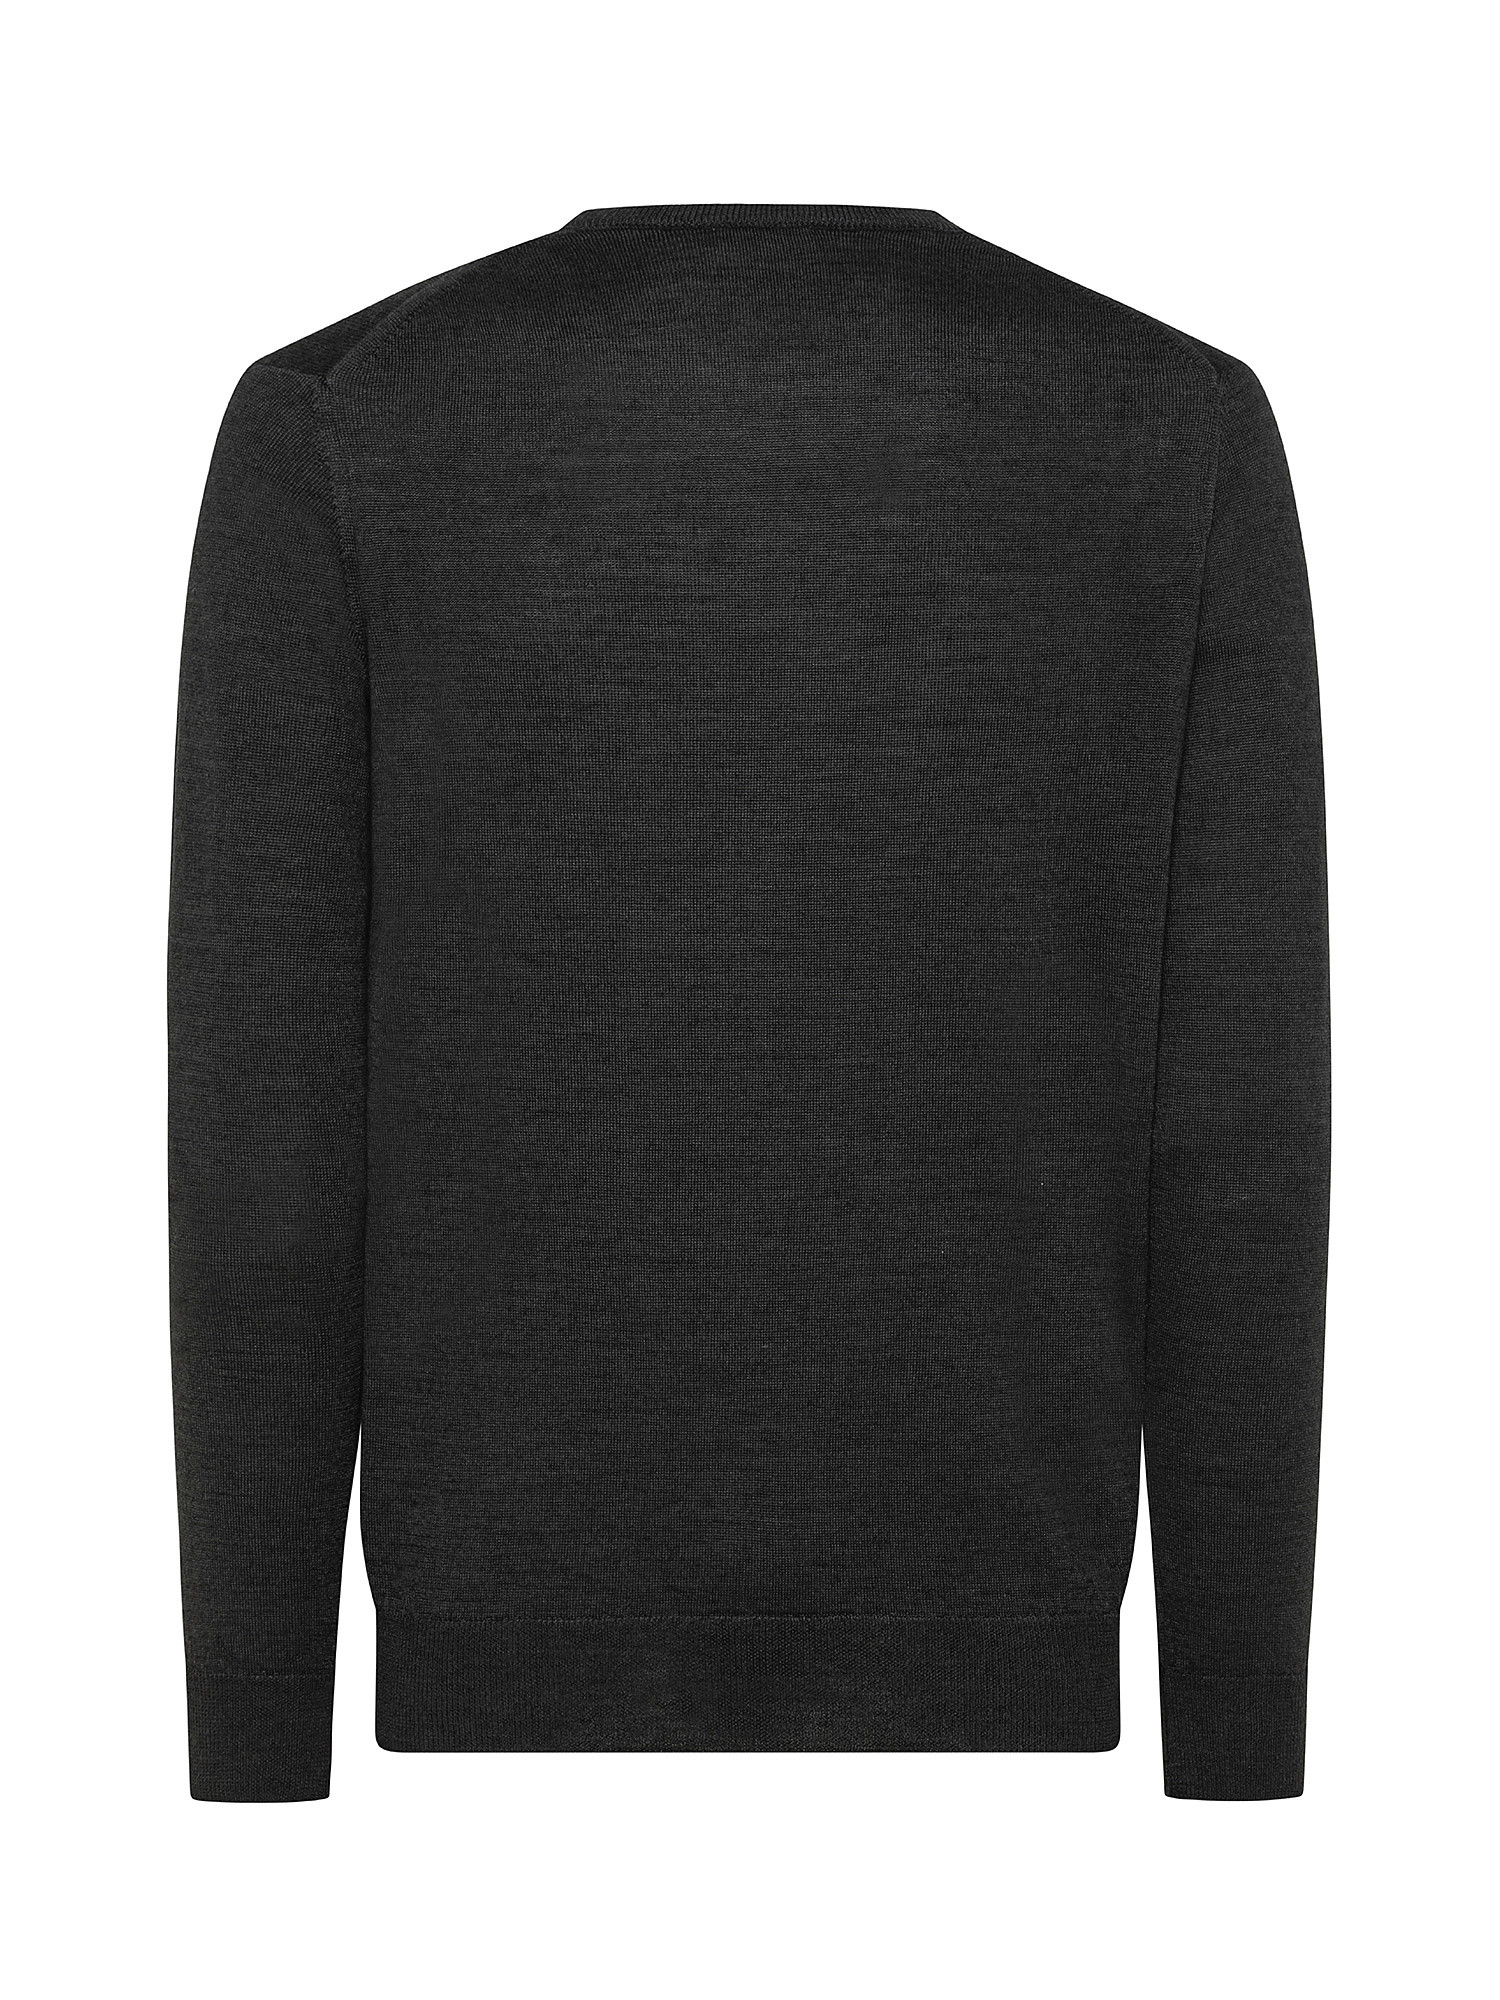 Merino Blend crewneck sweater - Machine washable, Black, large image number 1